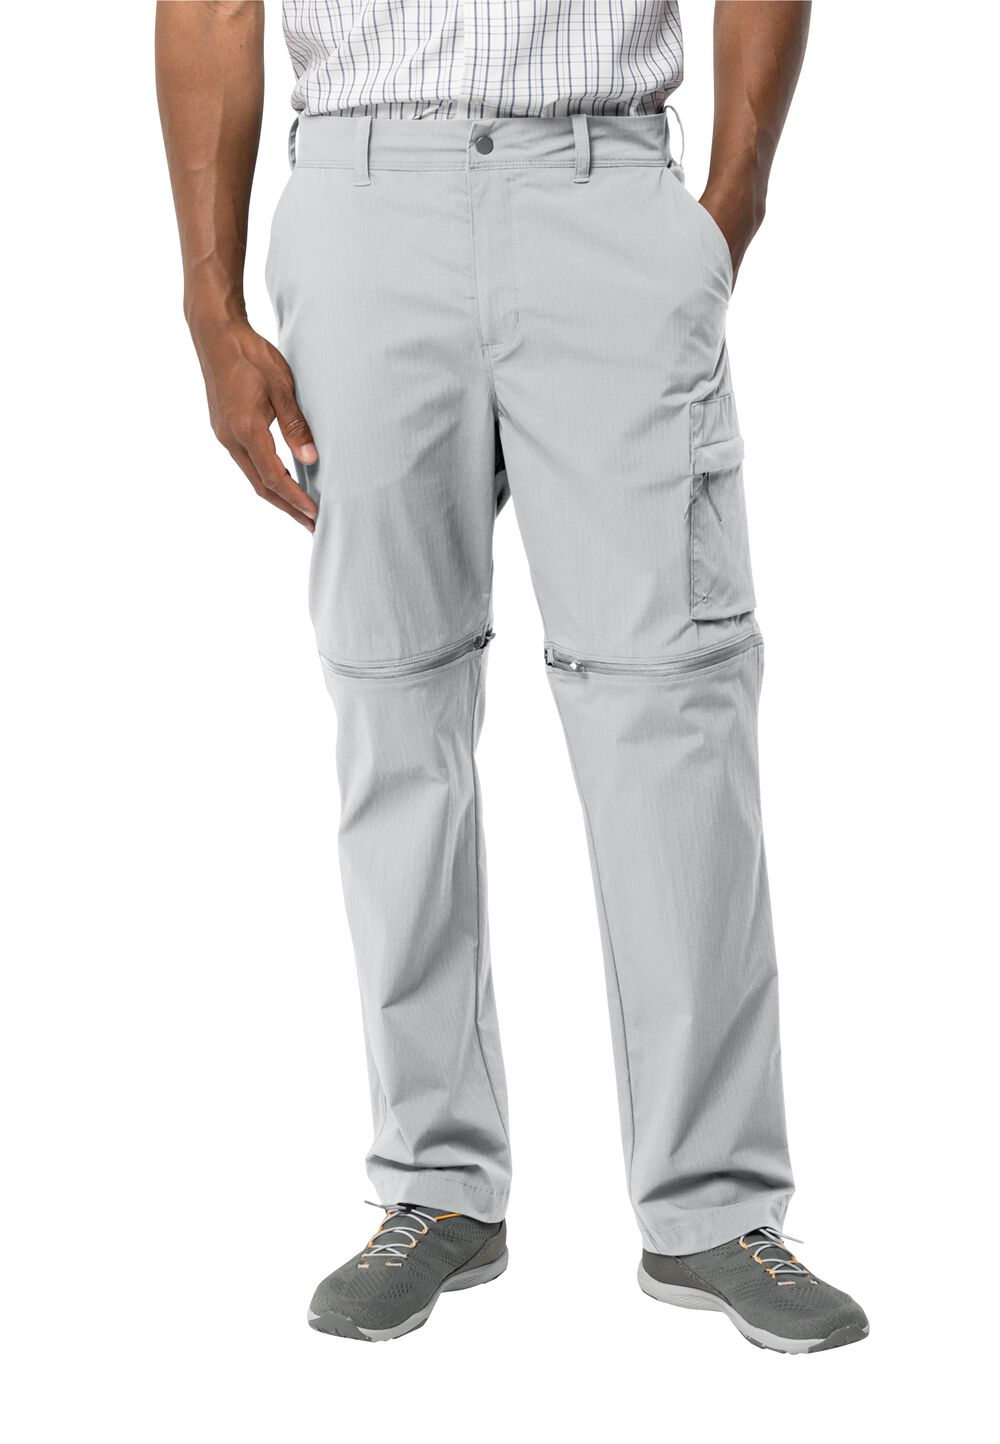 Jack Wolfskin Wanderthirst Zip Pants Men Zip-Off-broek Heren 58 grijs cool grey